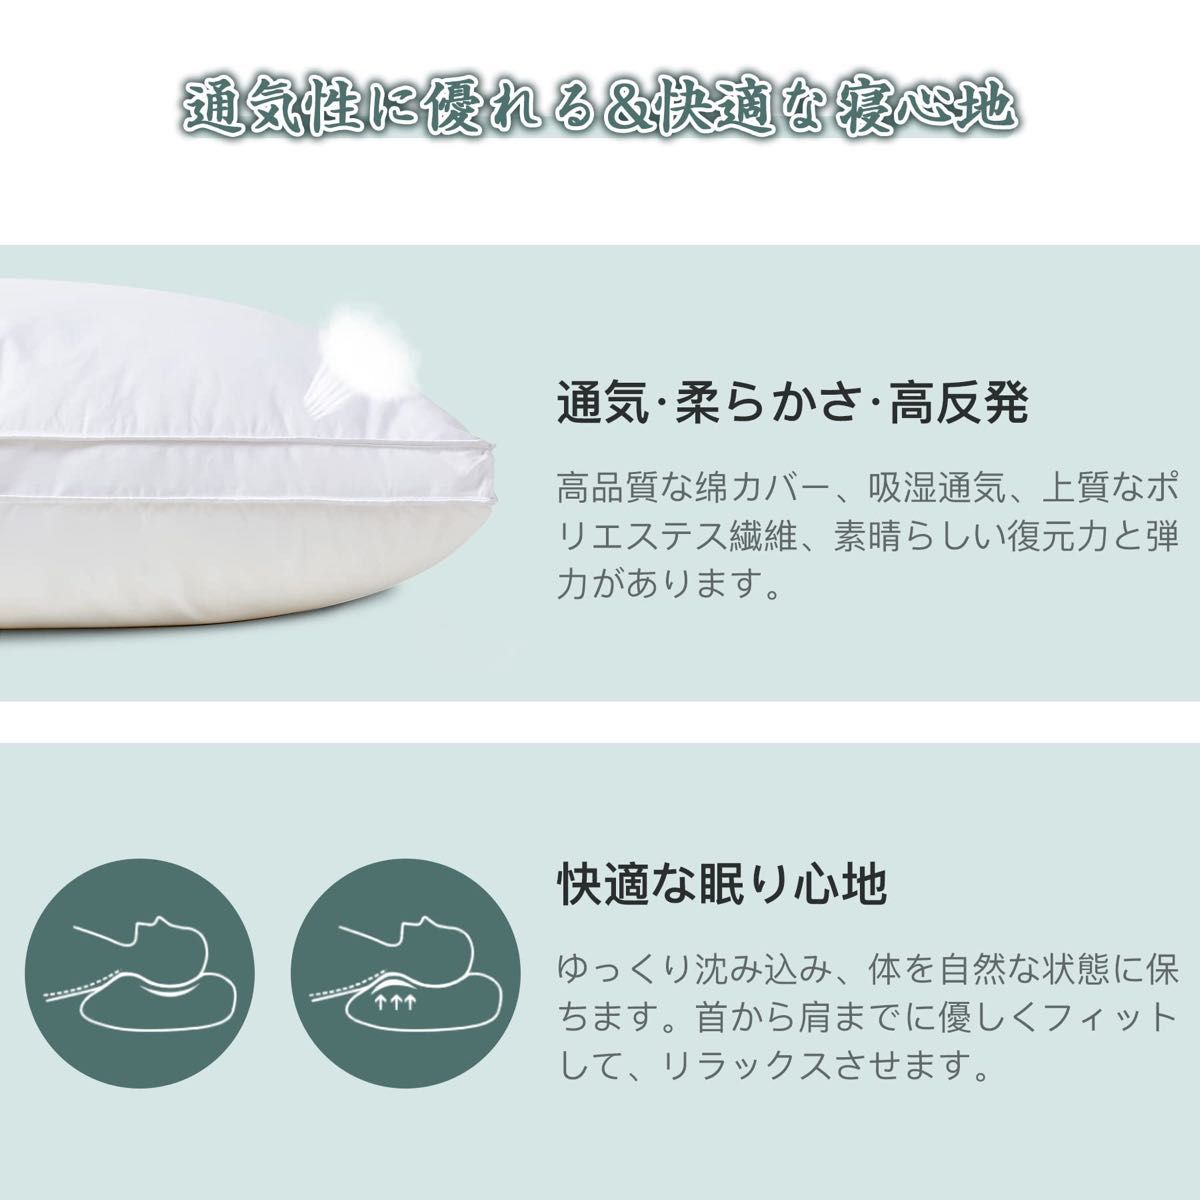 2個セット 枕 まくら ホテル仕様 高反発枕 横向き対応 丸洗い可能 立体構造 ホワイト(長さ63cm*幅43cm高さ20cm) 